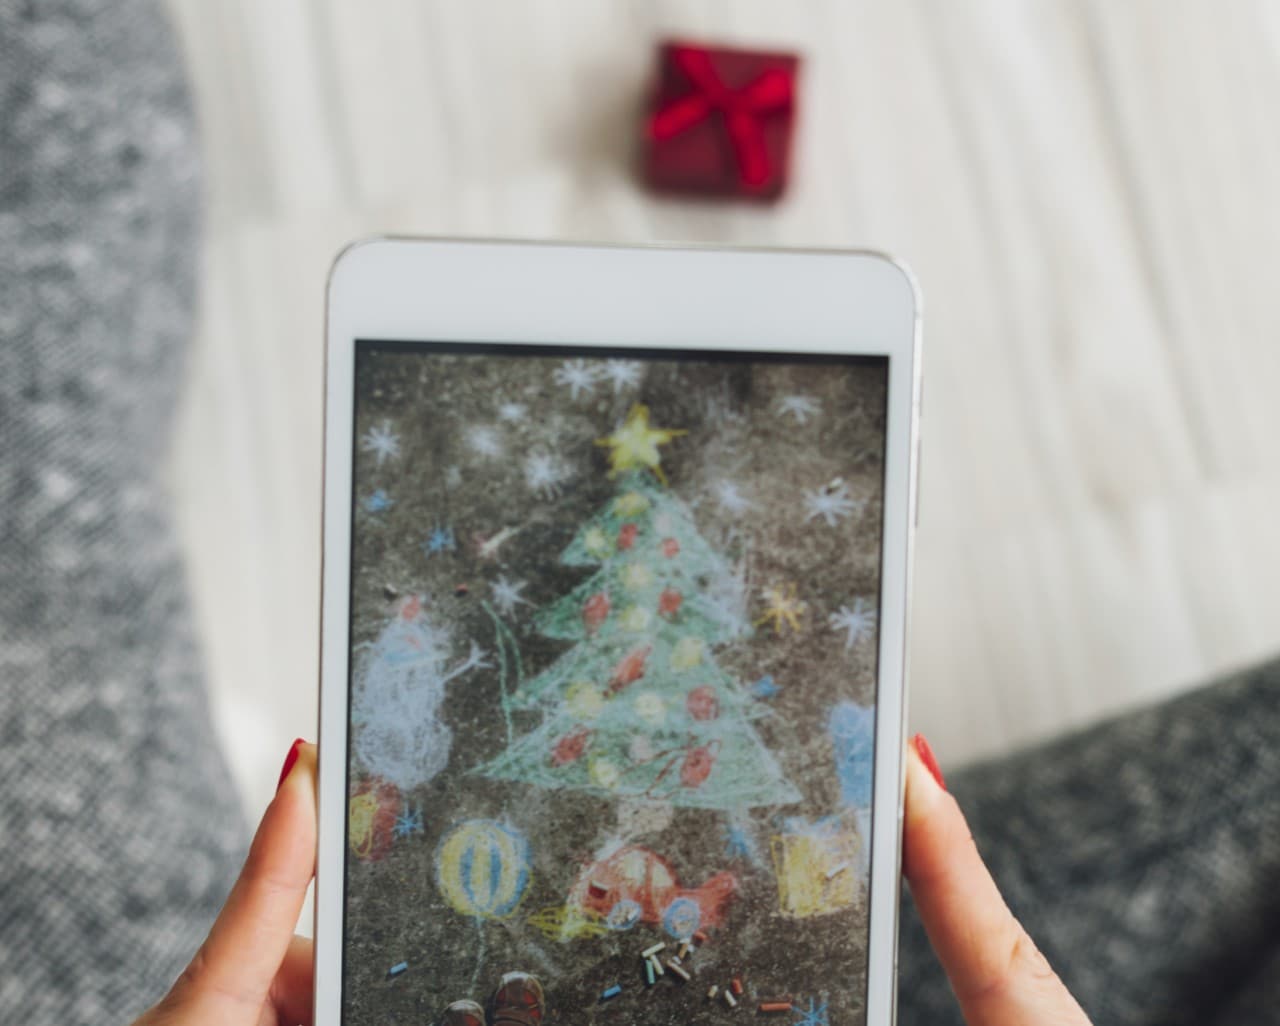 Migliori smartphone budget medio per il Natale 2015